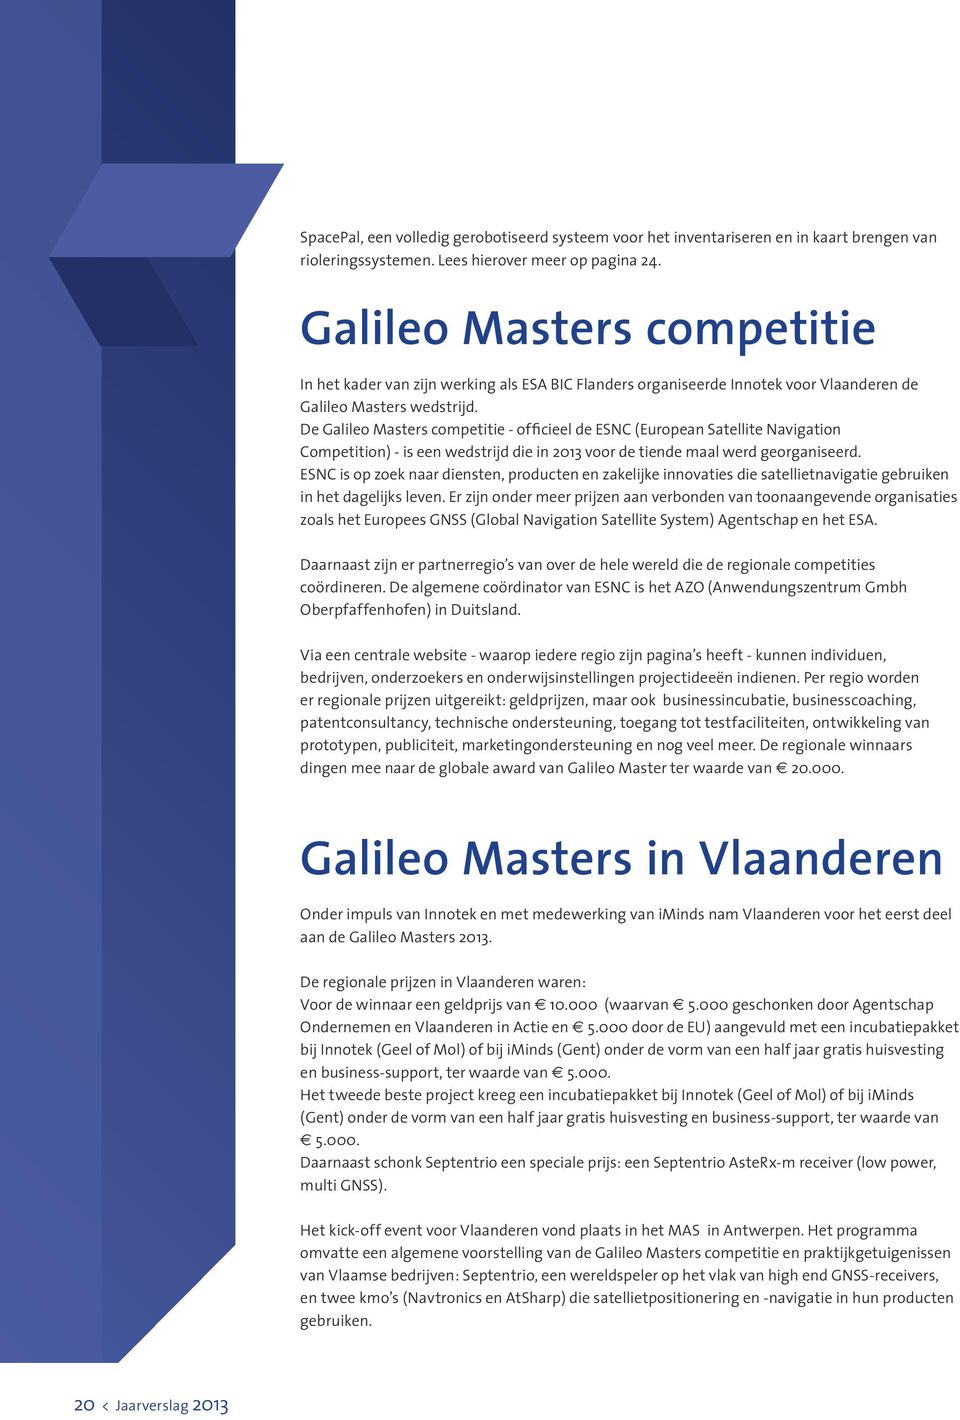 De Galileo Masters competitie - officieel de ESNC (European Satellite Navigation Competition) - is een wedstrijd die in 2013 voor de tiende maal werd georganiseerd.